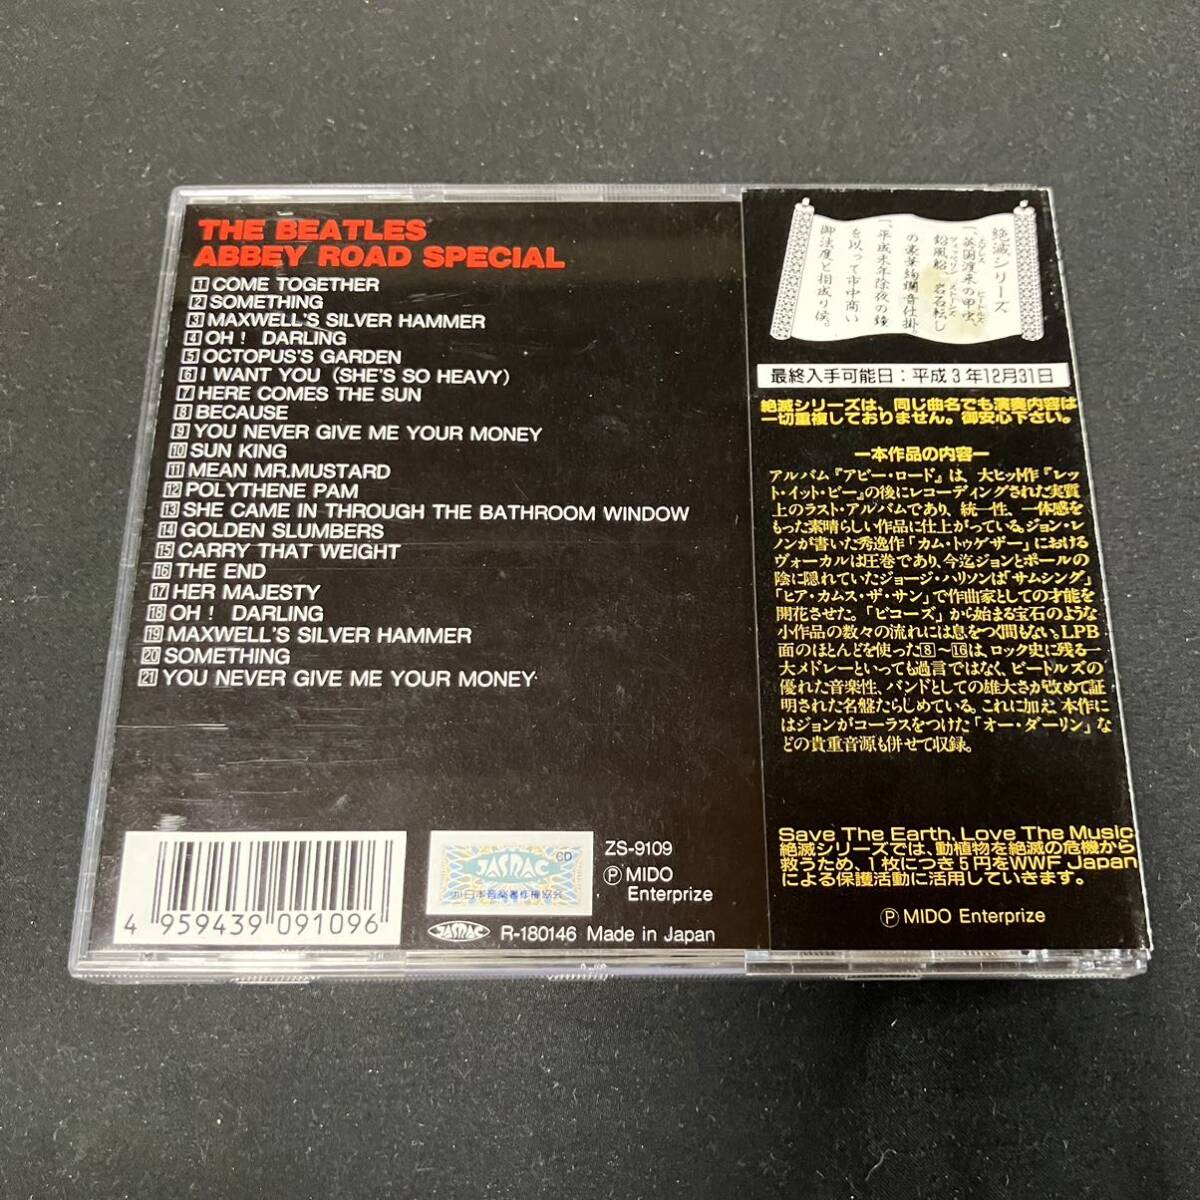 S15d CD 帯付 ザ・ビートルズ 巻の九 アビー・ロード・スペシャル The Beatles 絶滅シリーズの画像2